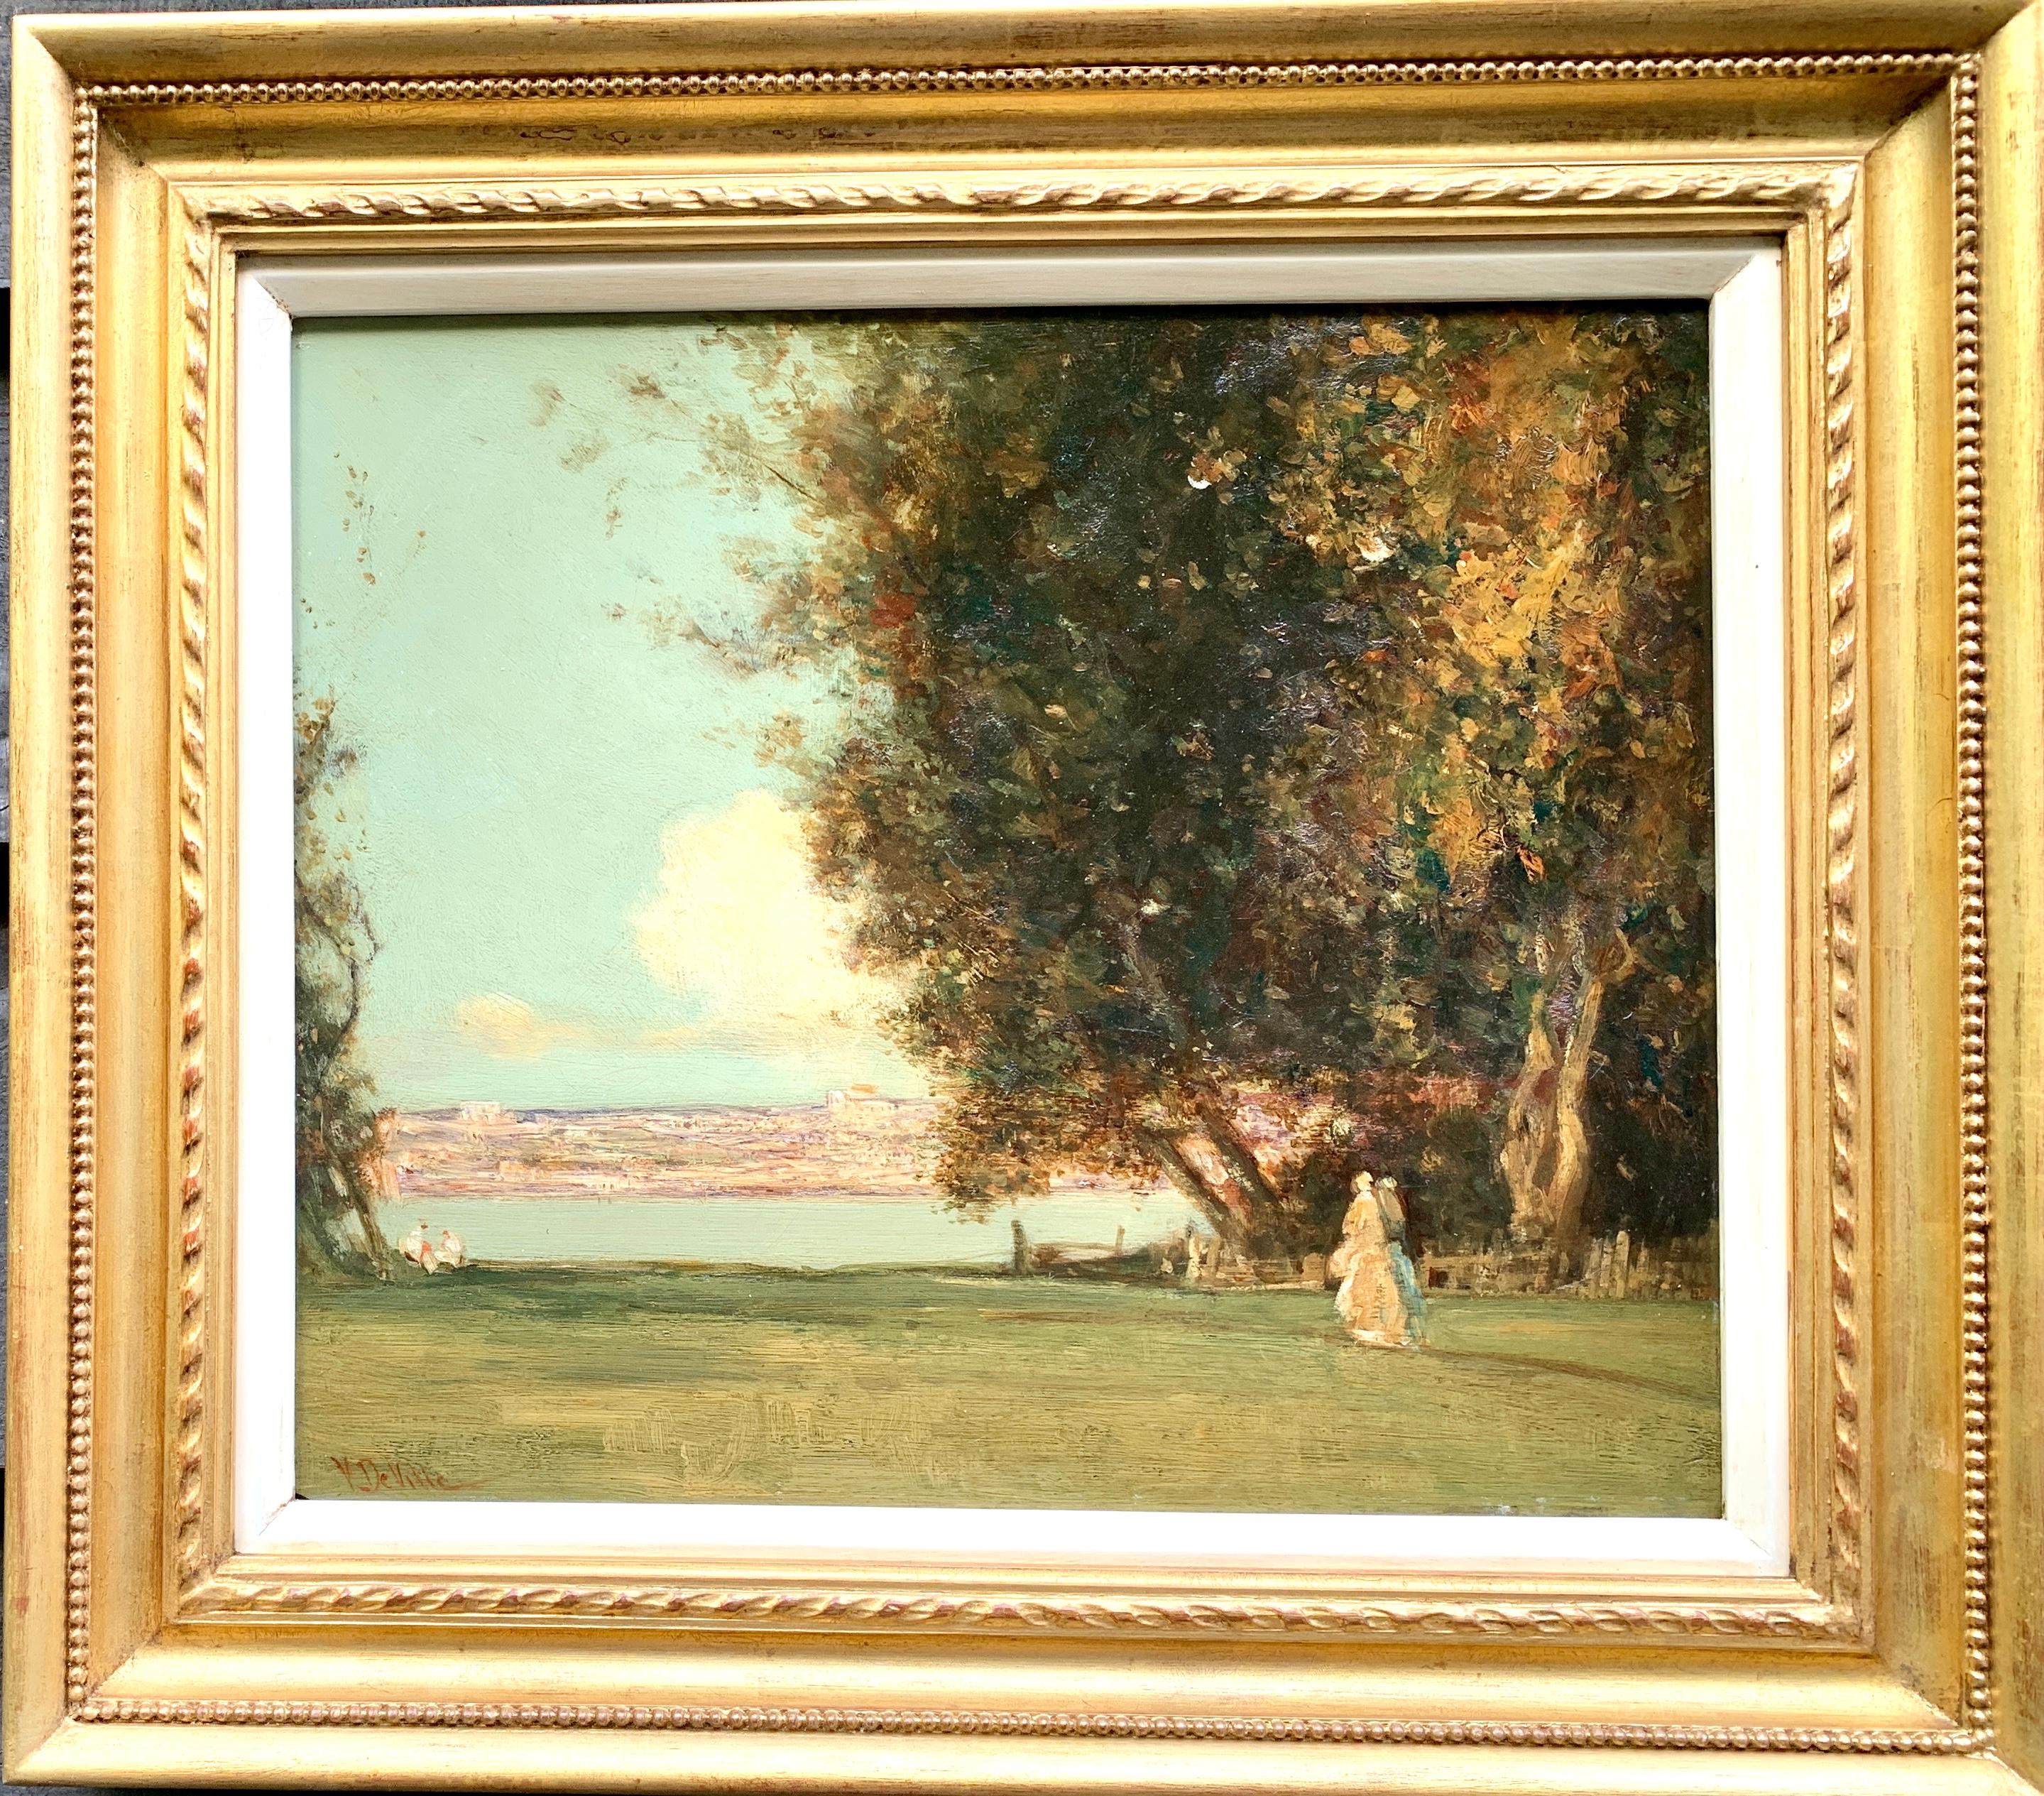 Figurative Painting Joseph Vickers De Ville - Antiquité, paysage classique impressionniste anglais du 19e siècle avec personnages 